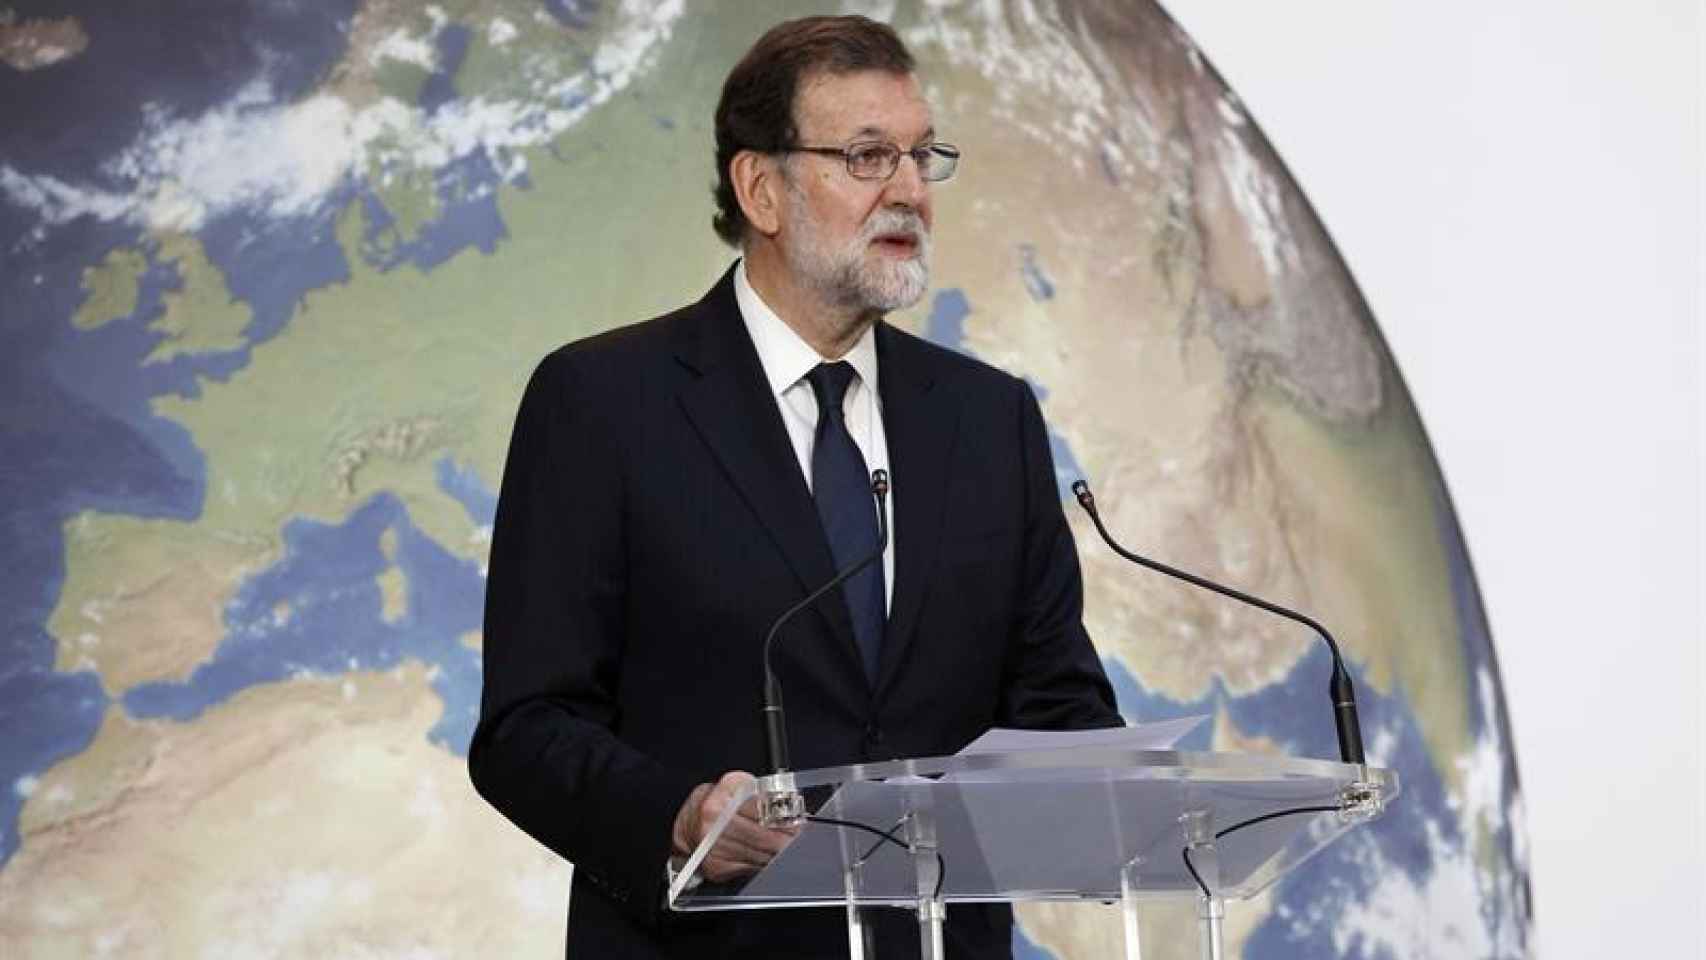 Rajoy interviene en una jornada sobre cambio climático en Madrid.